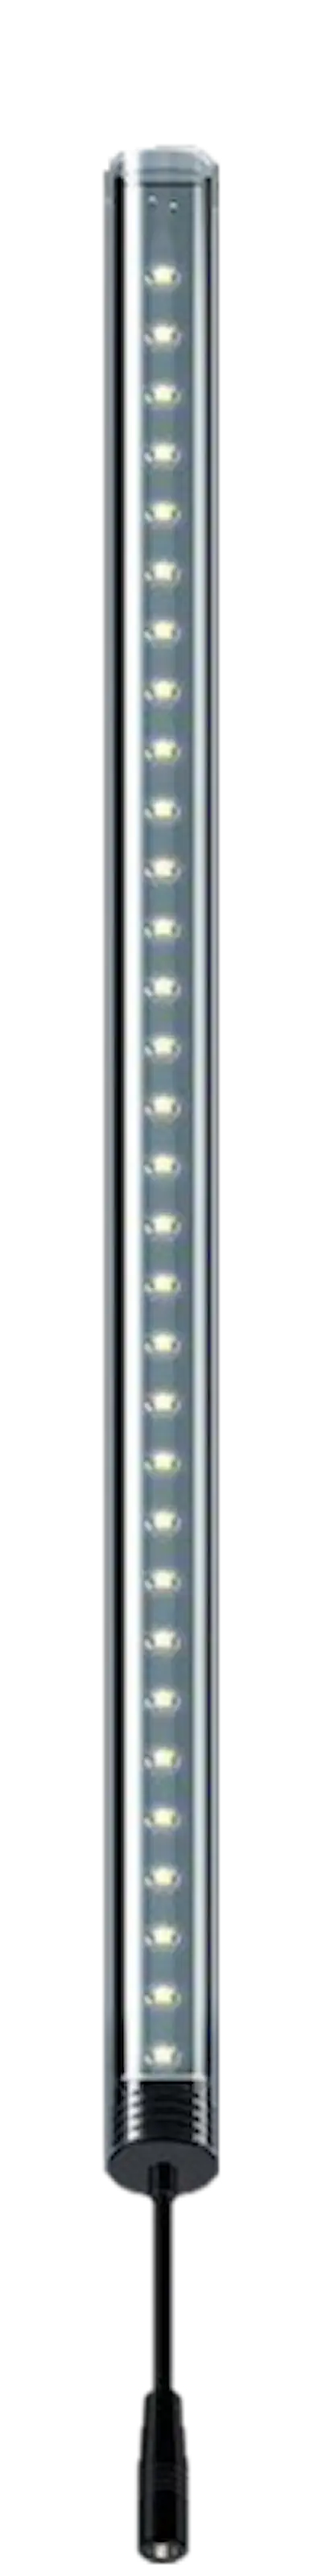 LightWave LED komplett sett, 520 - 600 mm